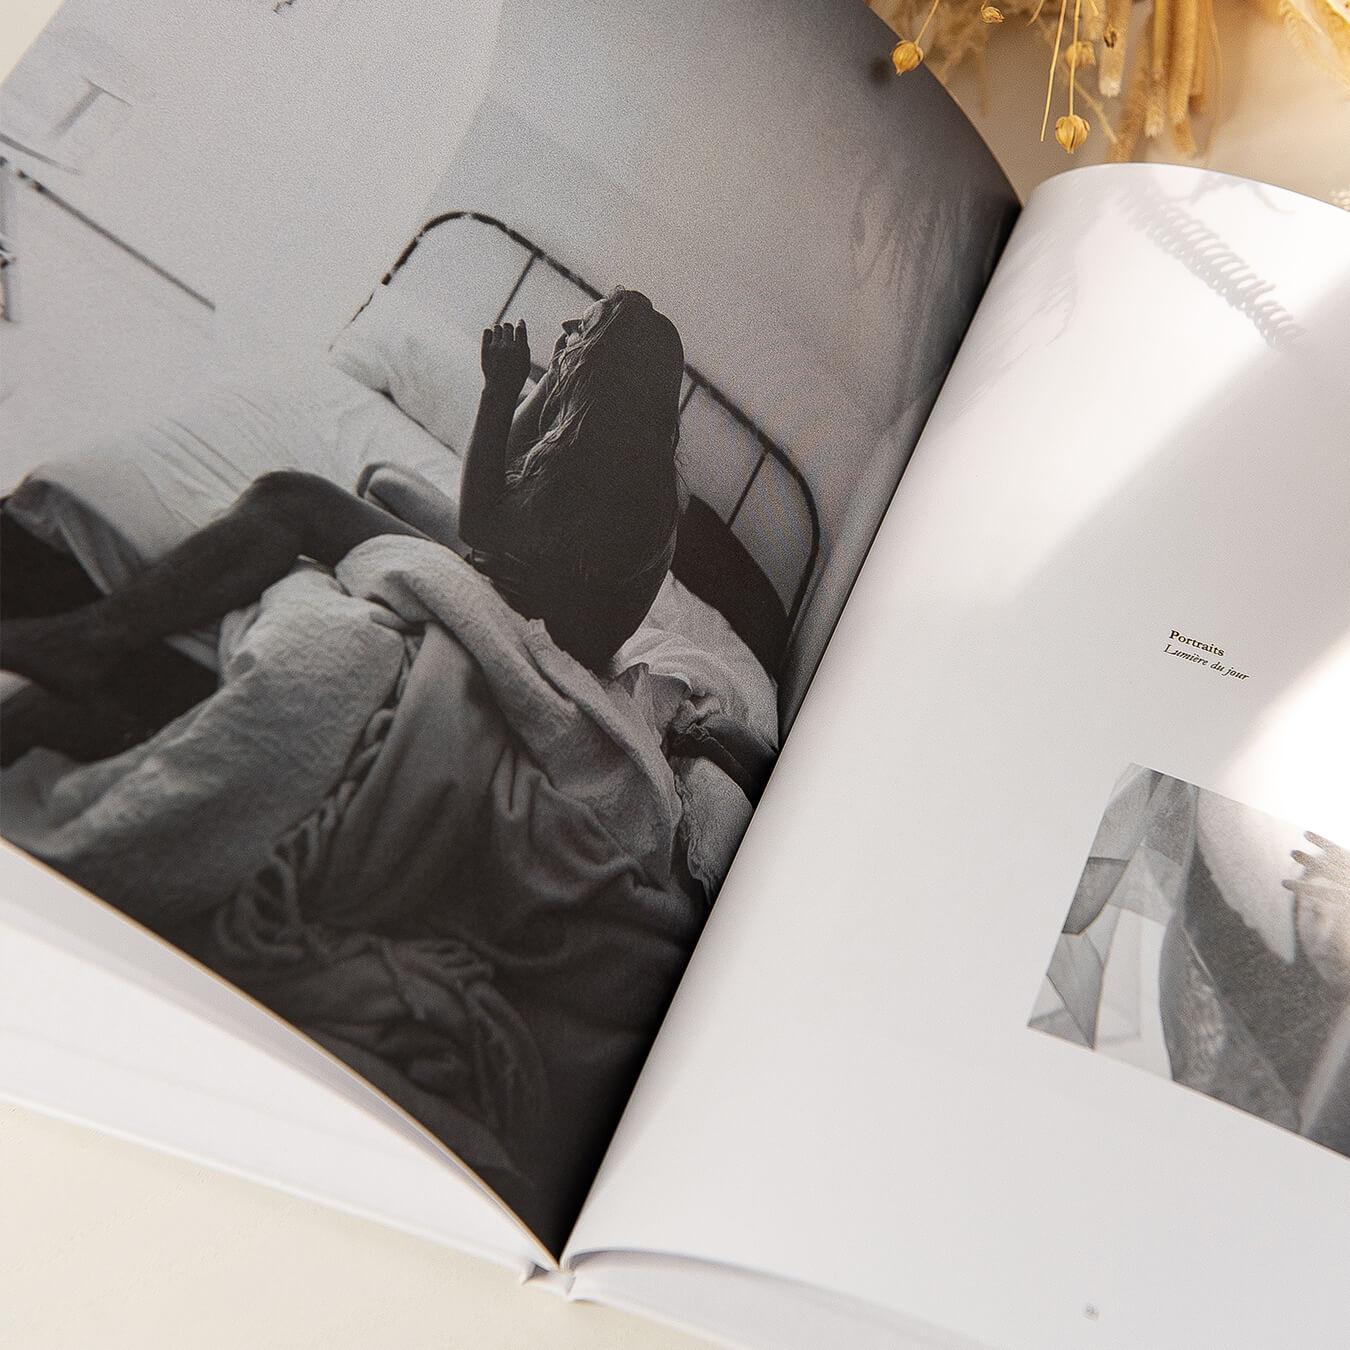 Le livre - Livre photo personnalisé - Innocence Paris - Couverture Rigide - Précieux Souvenirs - Album photos